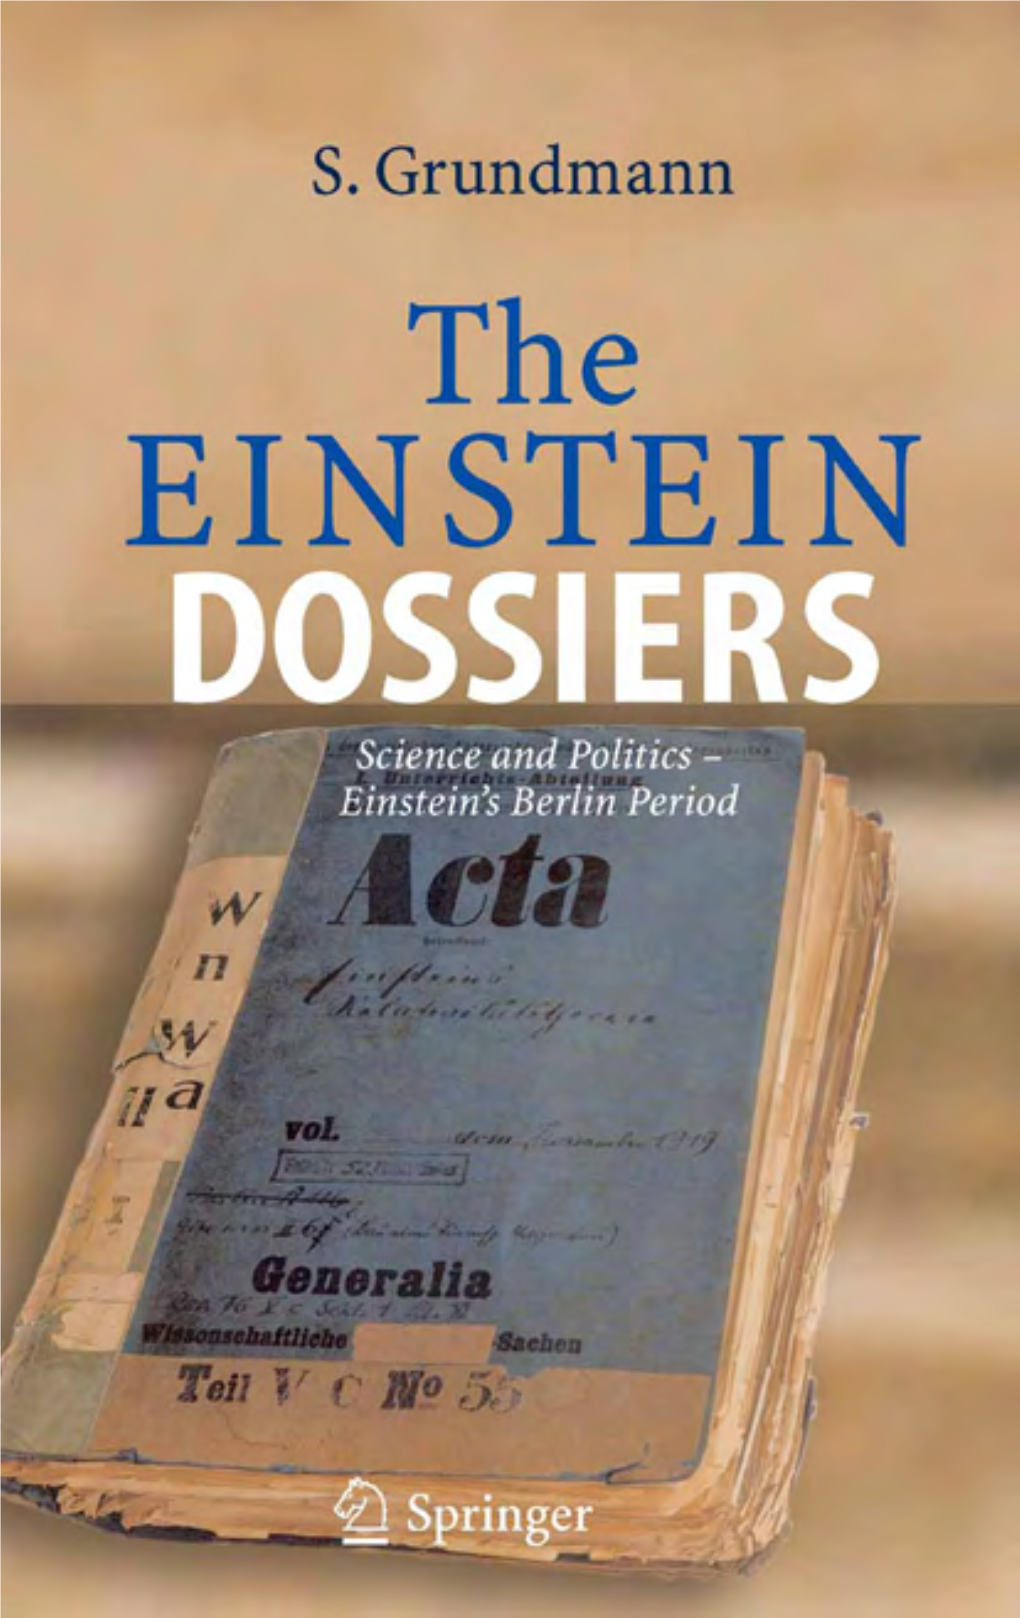 The Einstein Dossiers Siegfried Grundmann the Einstein Dossiers